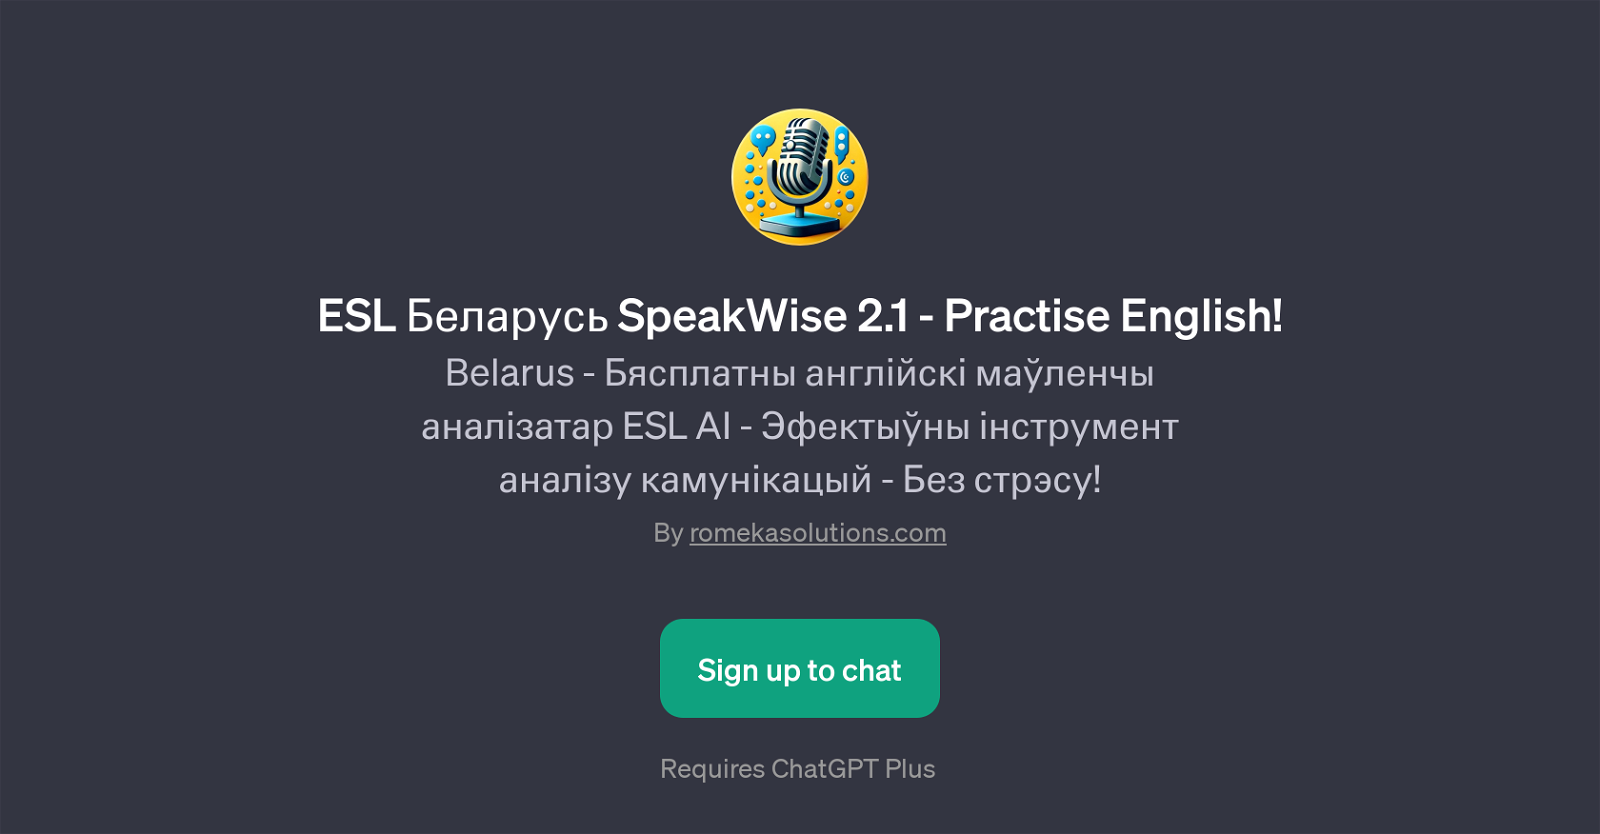 ESL  SpeakWise 2.1 - Practise English! website